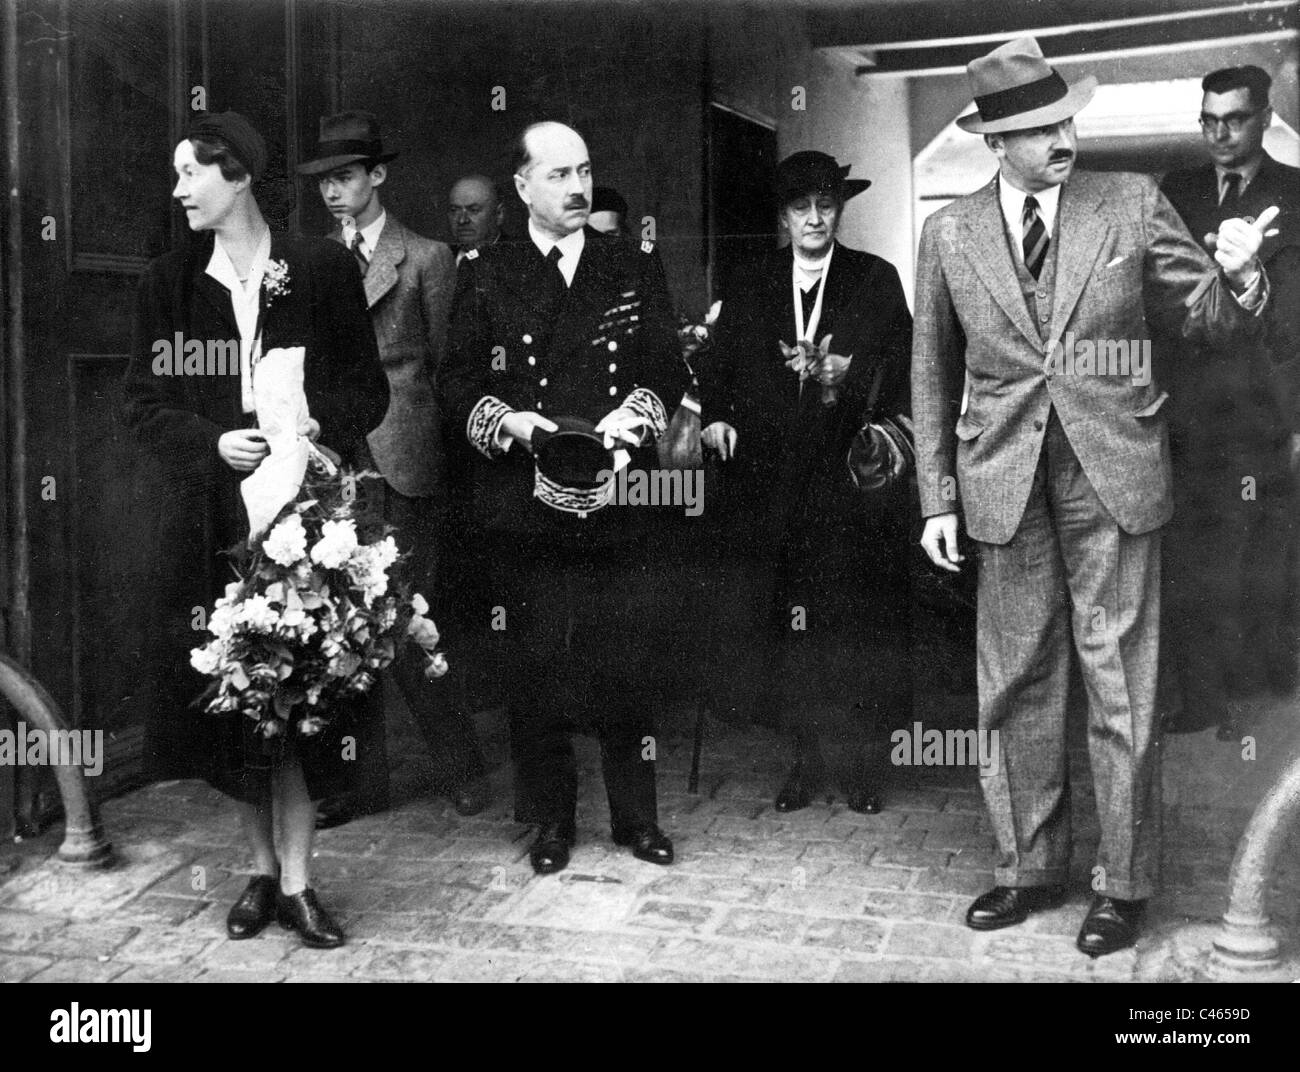 Charlotte de Luxembourg et son époux le Prince Félix de Bourbon-parme, 1940 Banque D'Images